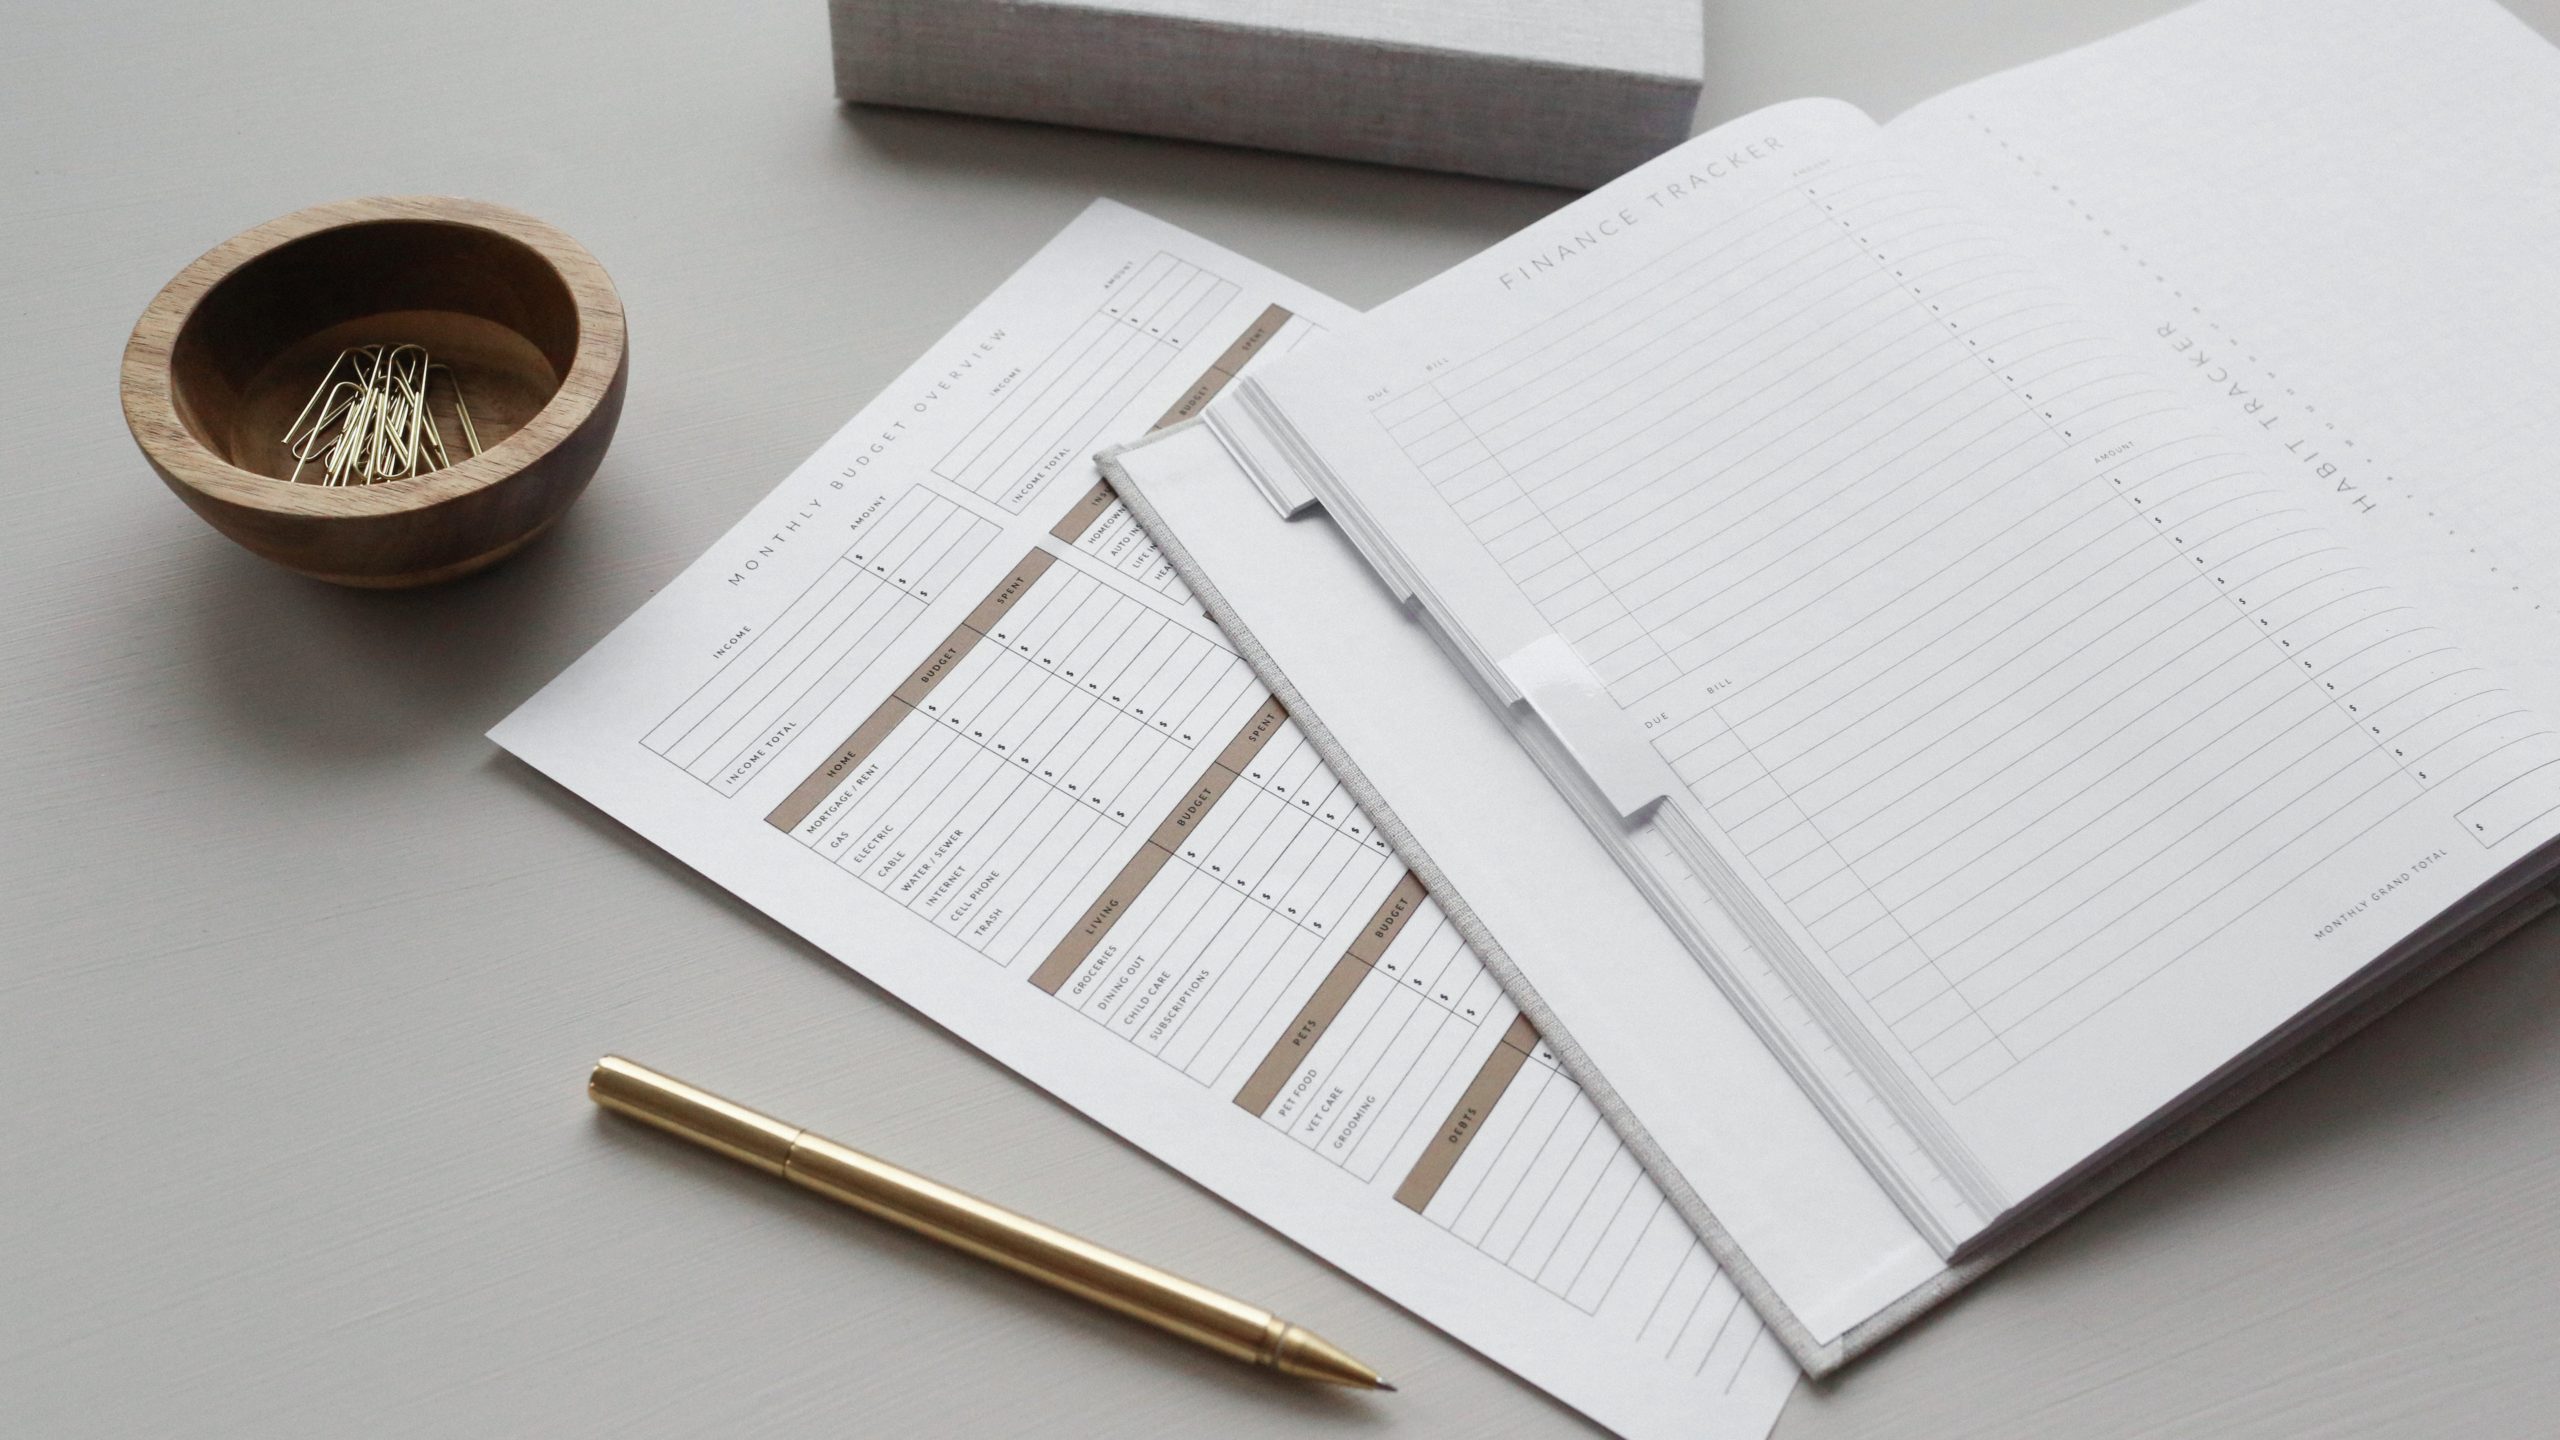 Um livro de finanças e um diário estão abertos em uma mesa ao lado de uma caneta e uma tigela de clipes de papel.